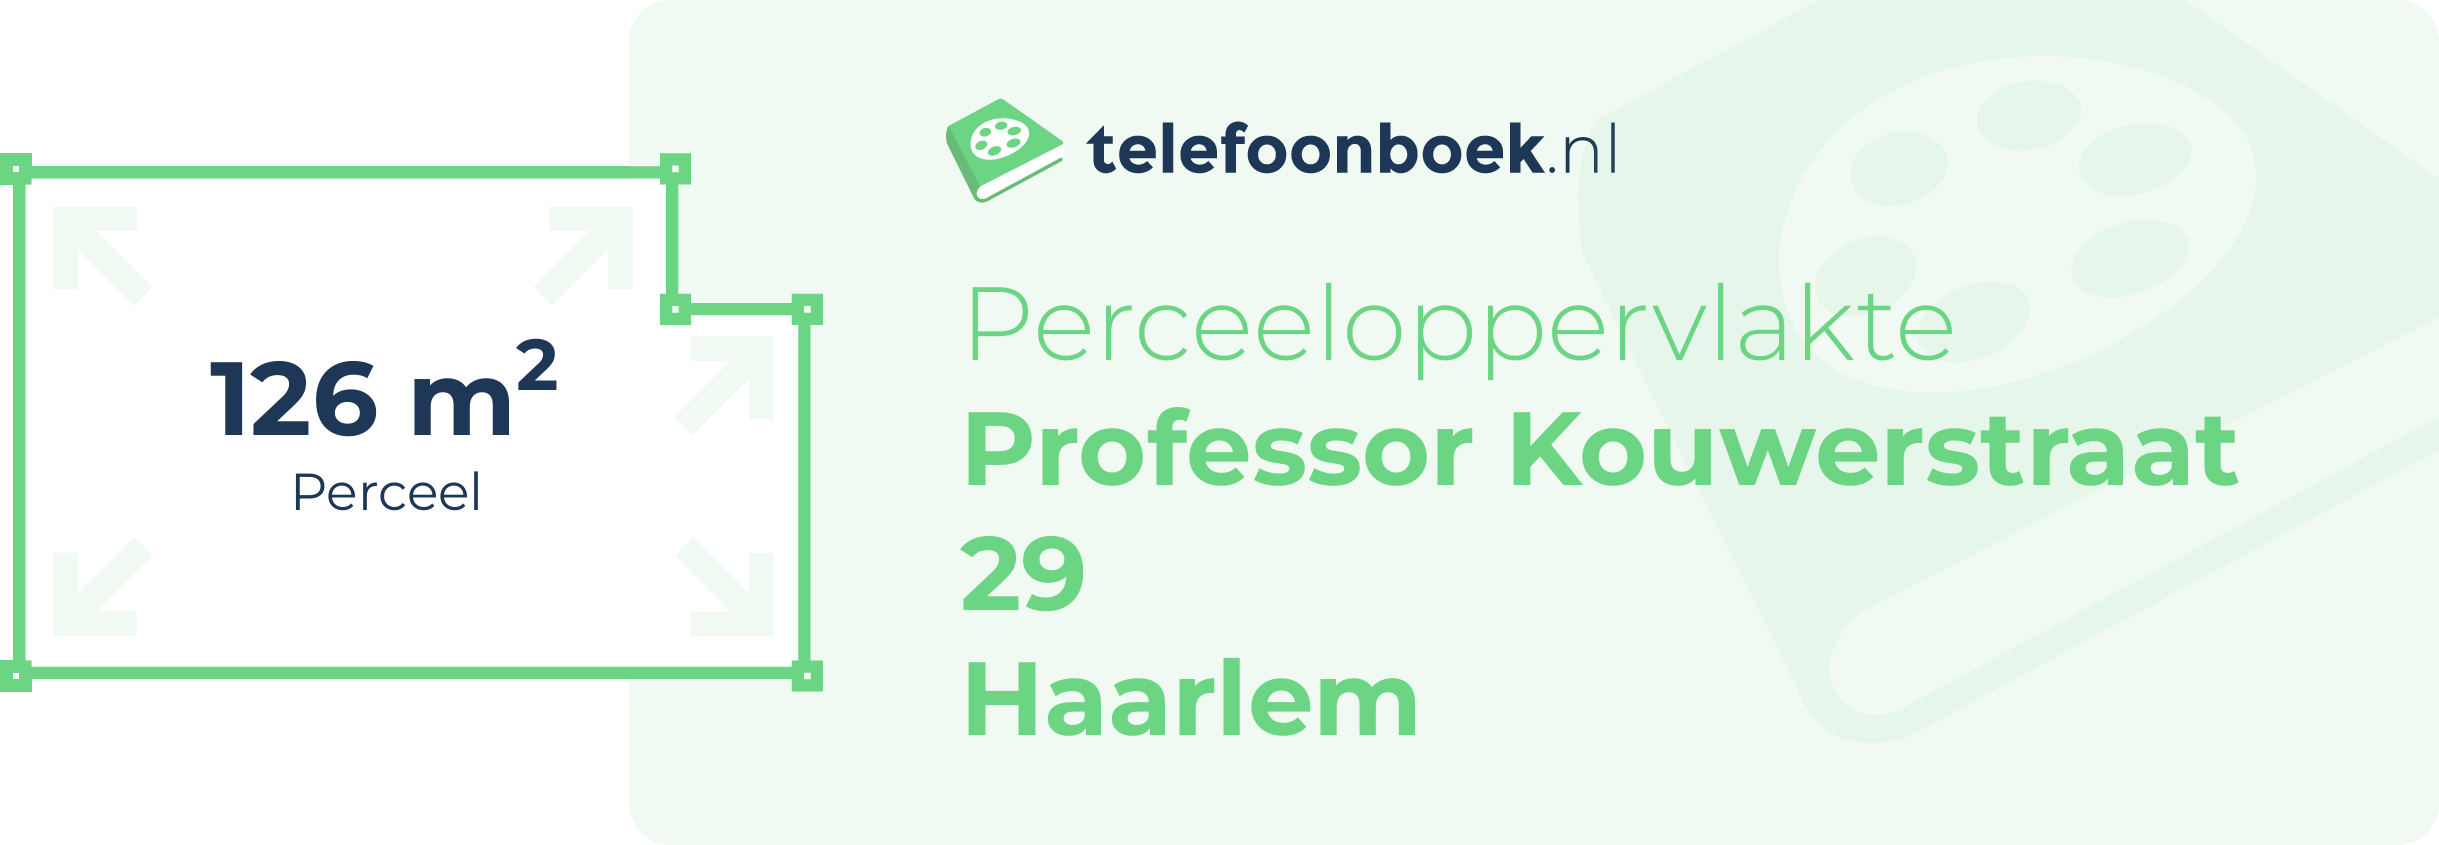 Perceeloppervlakte Professor Kouwerstraat 29 Haarlem